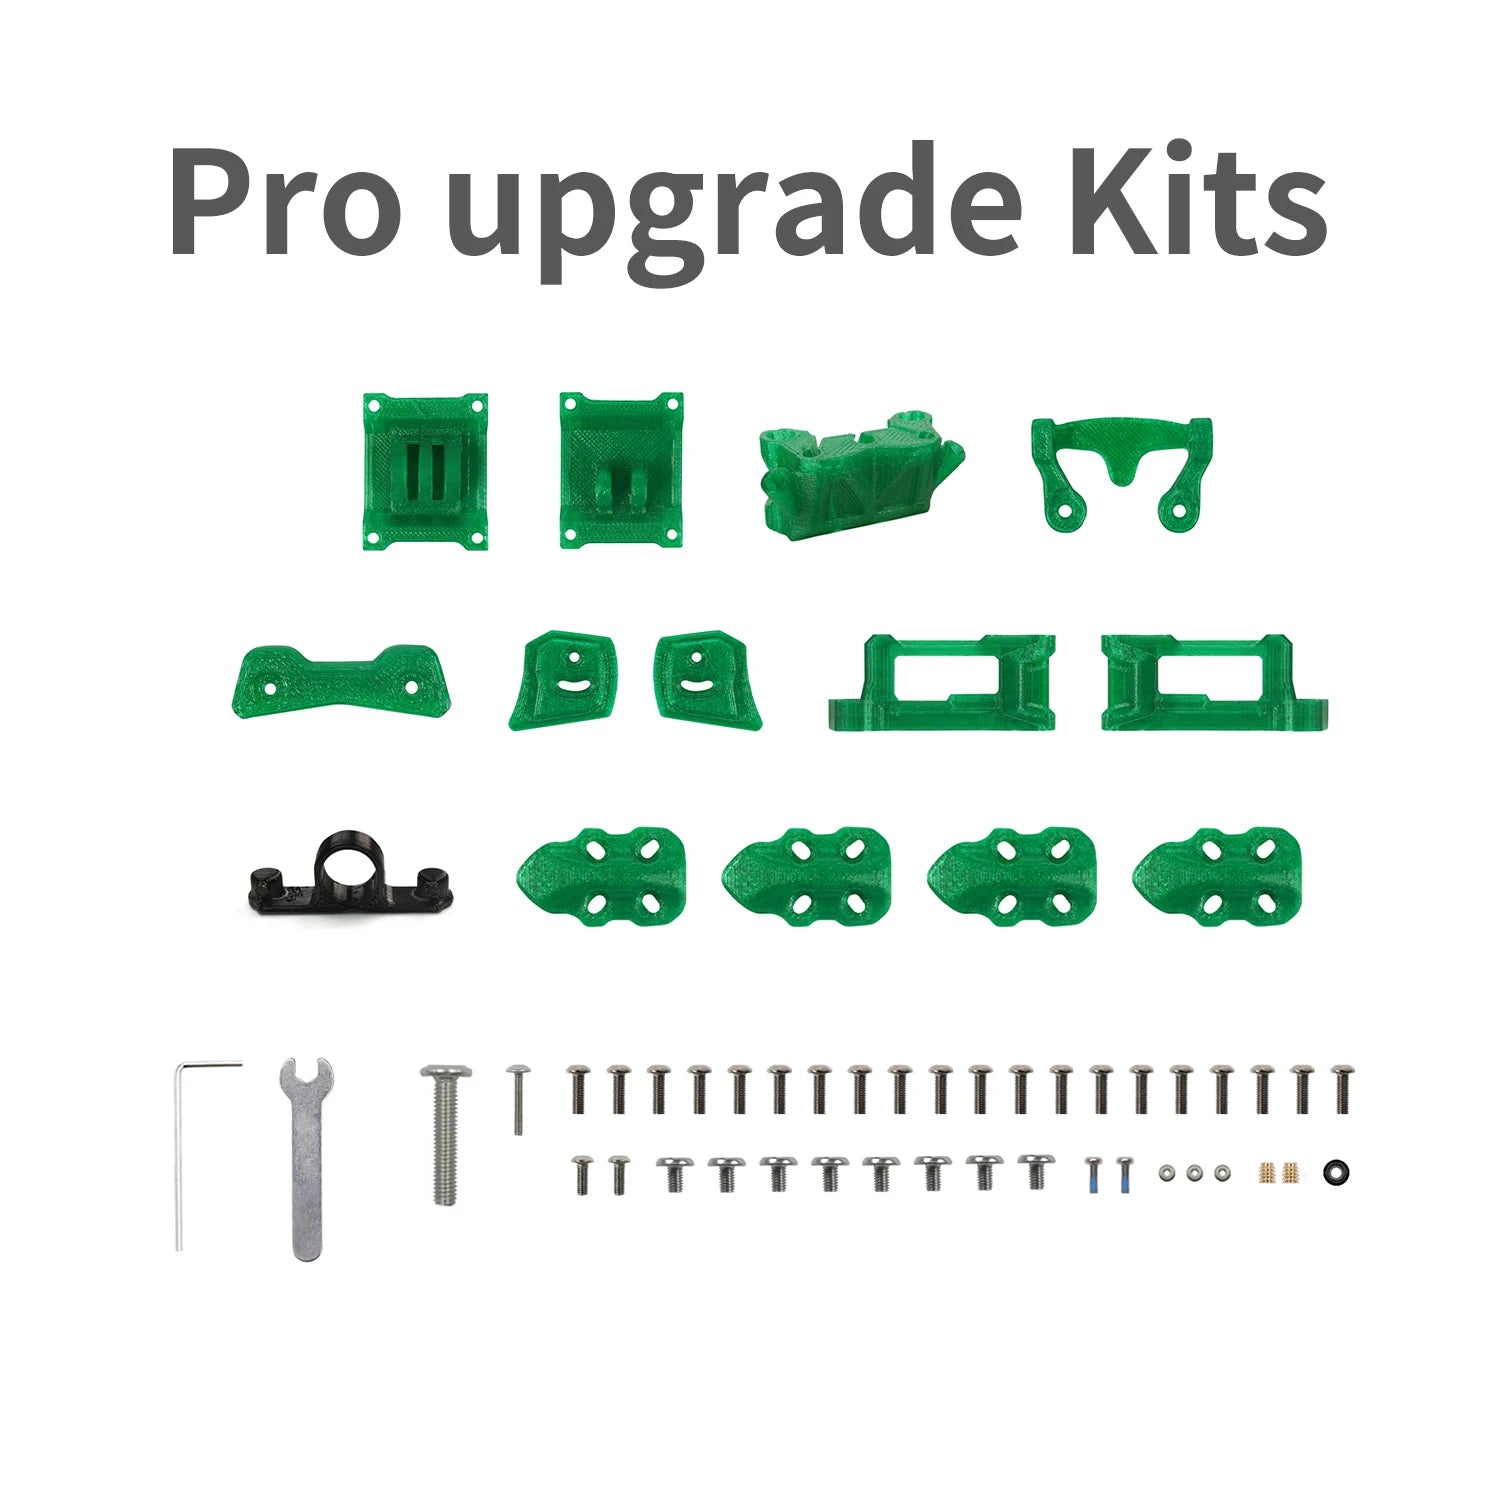 Pro upgrade Kits 6 00 2D Q TTTtttTTTTTT 